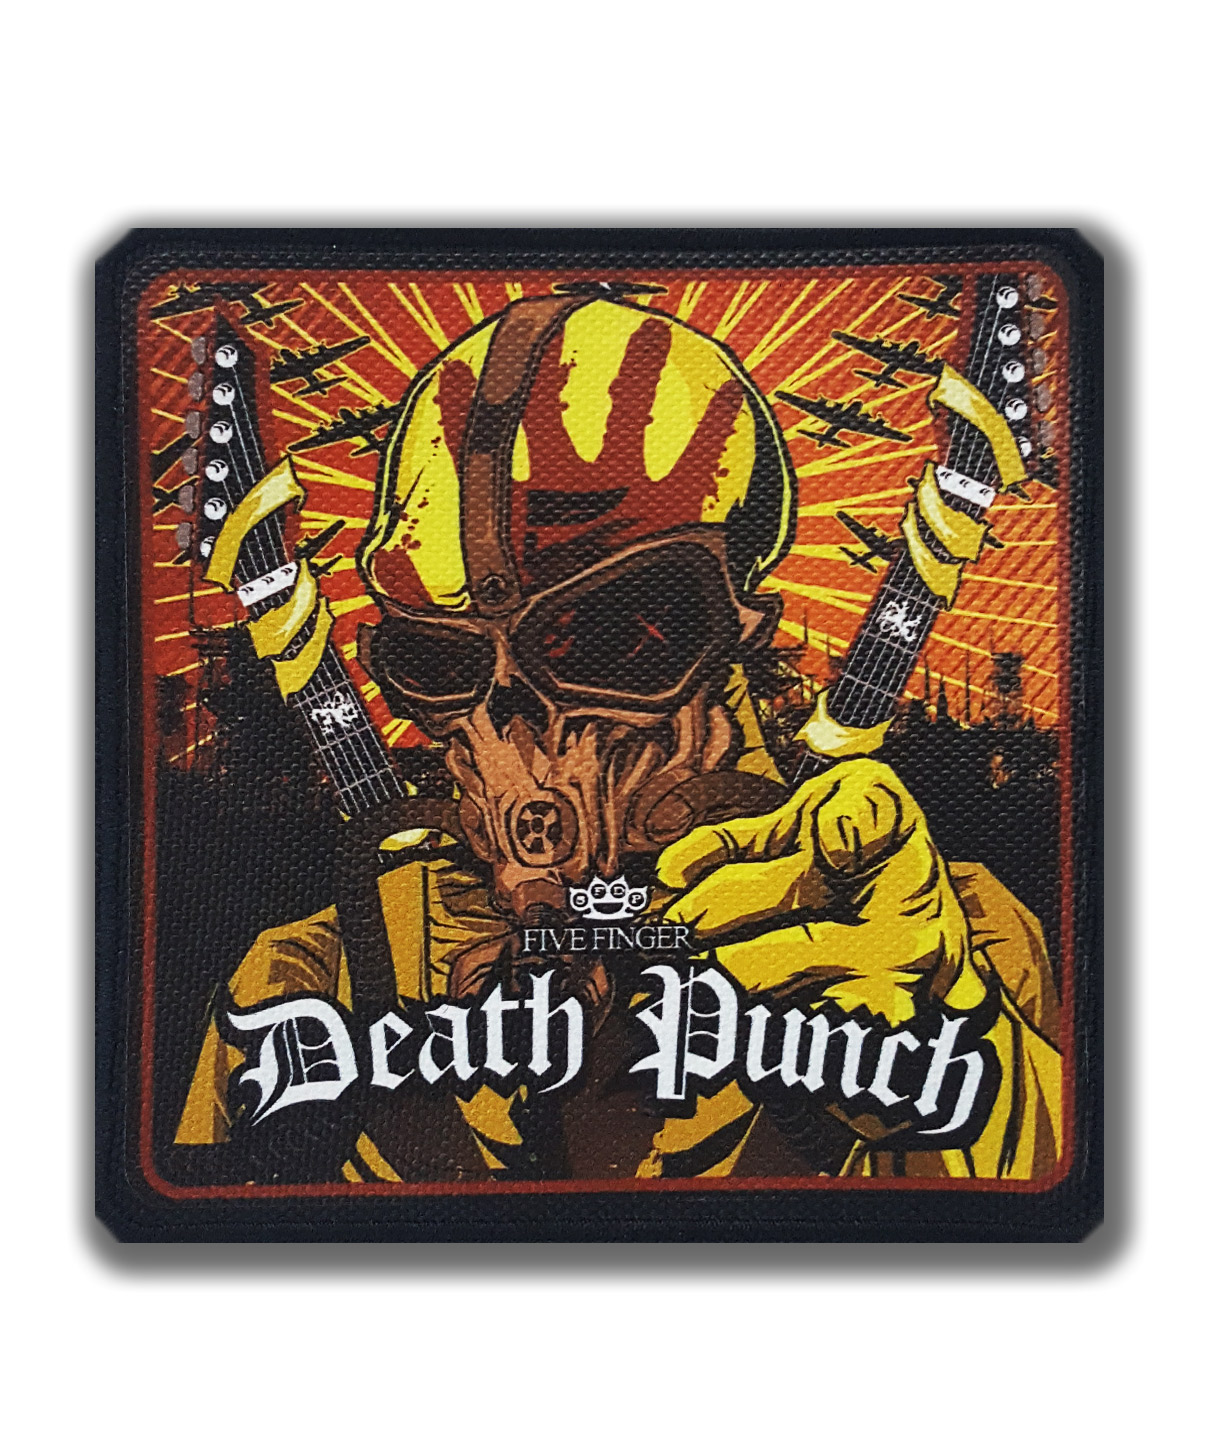 Нашивка Rock Merch VIP Five Finger Death Punch - фото 1 - rockbunker.ru